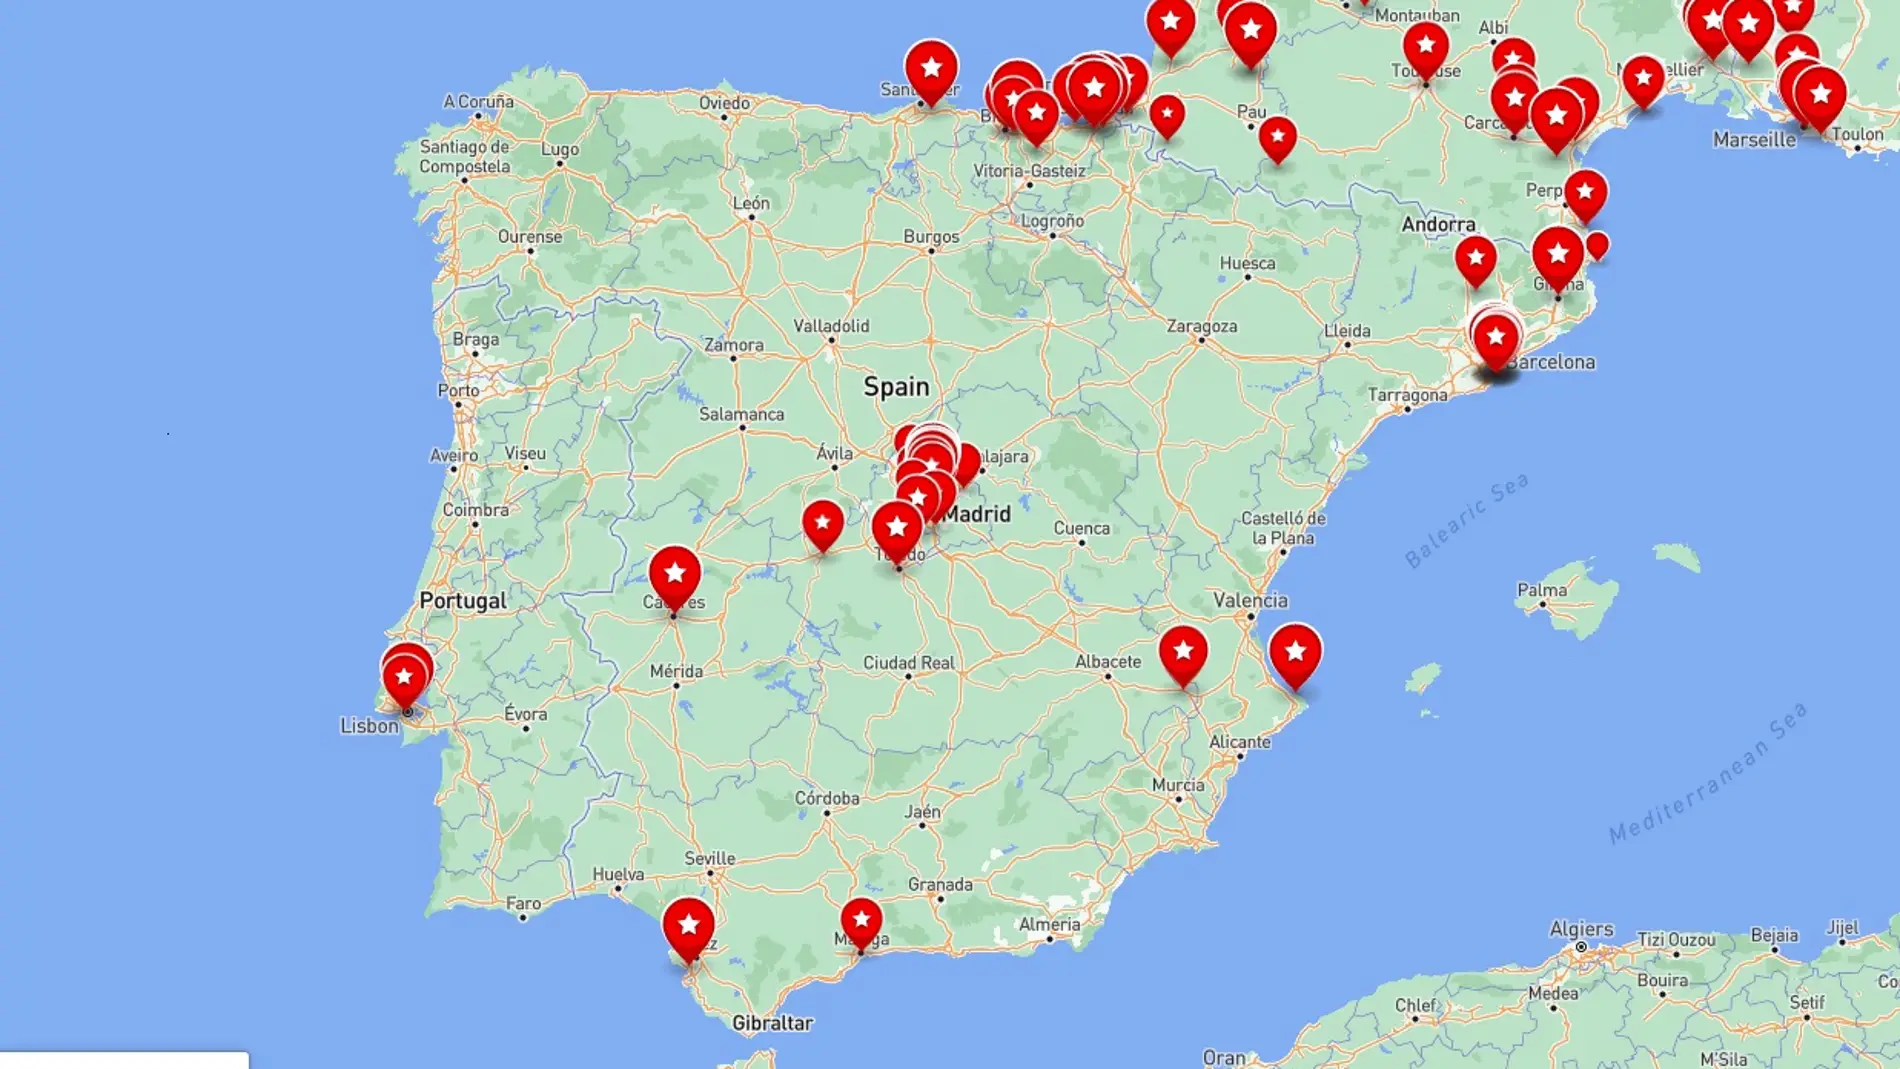 El mapa con los mejores restaurantes y bares de España